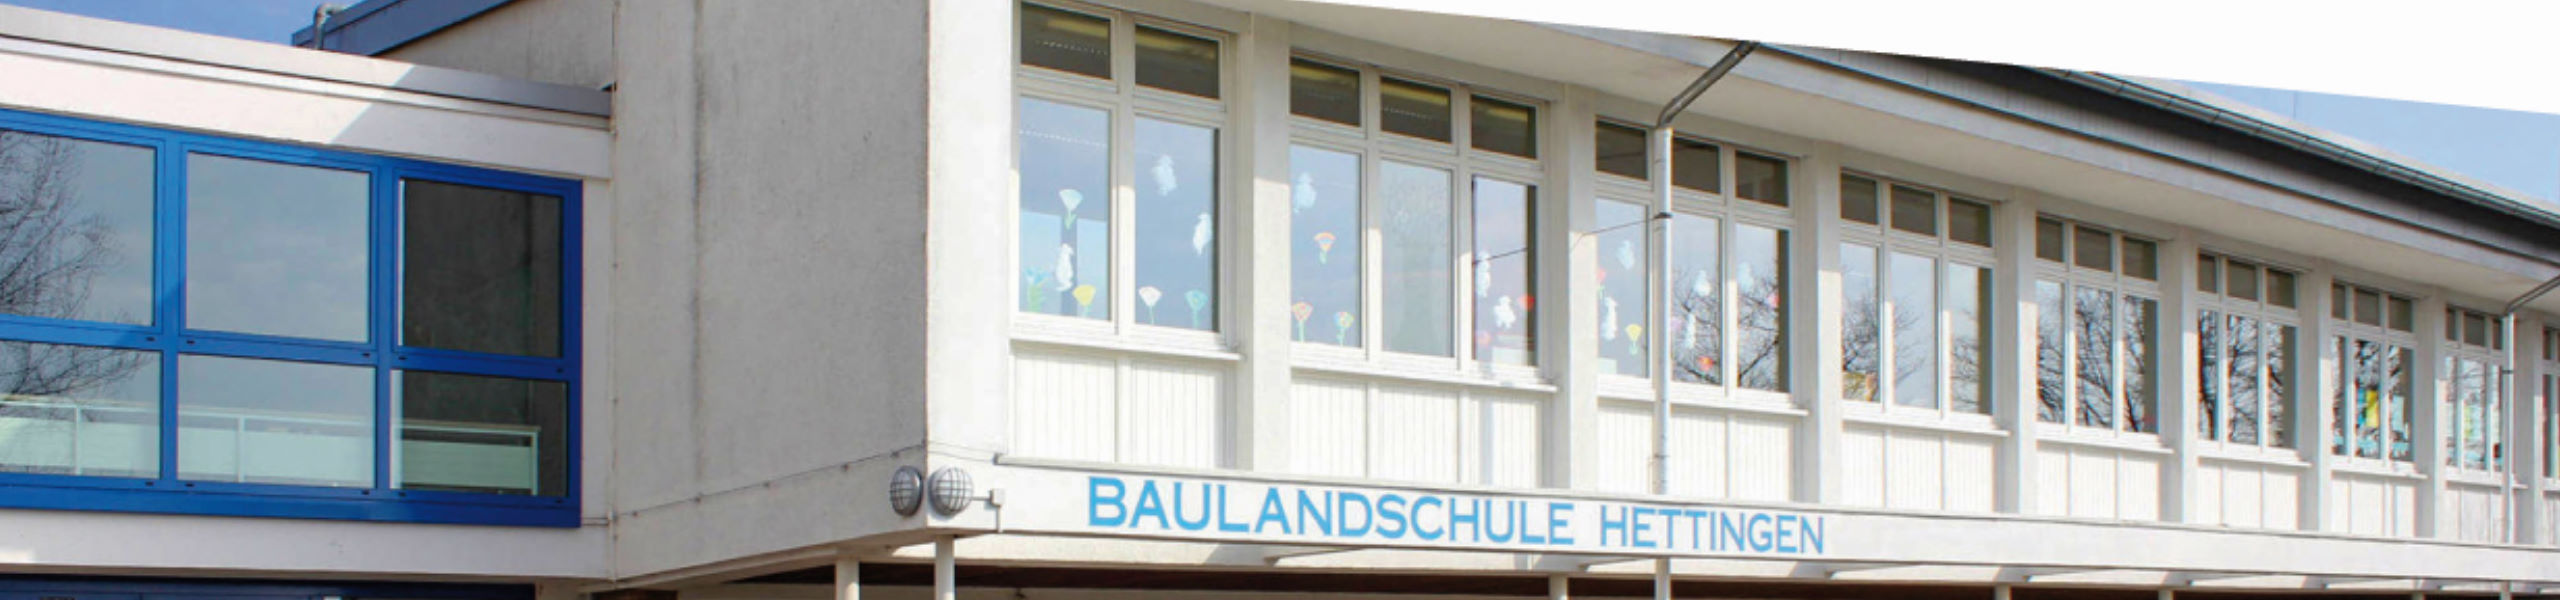 Baulandschule Hettingen - Für Eltern